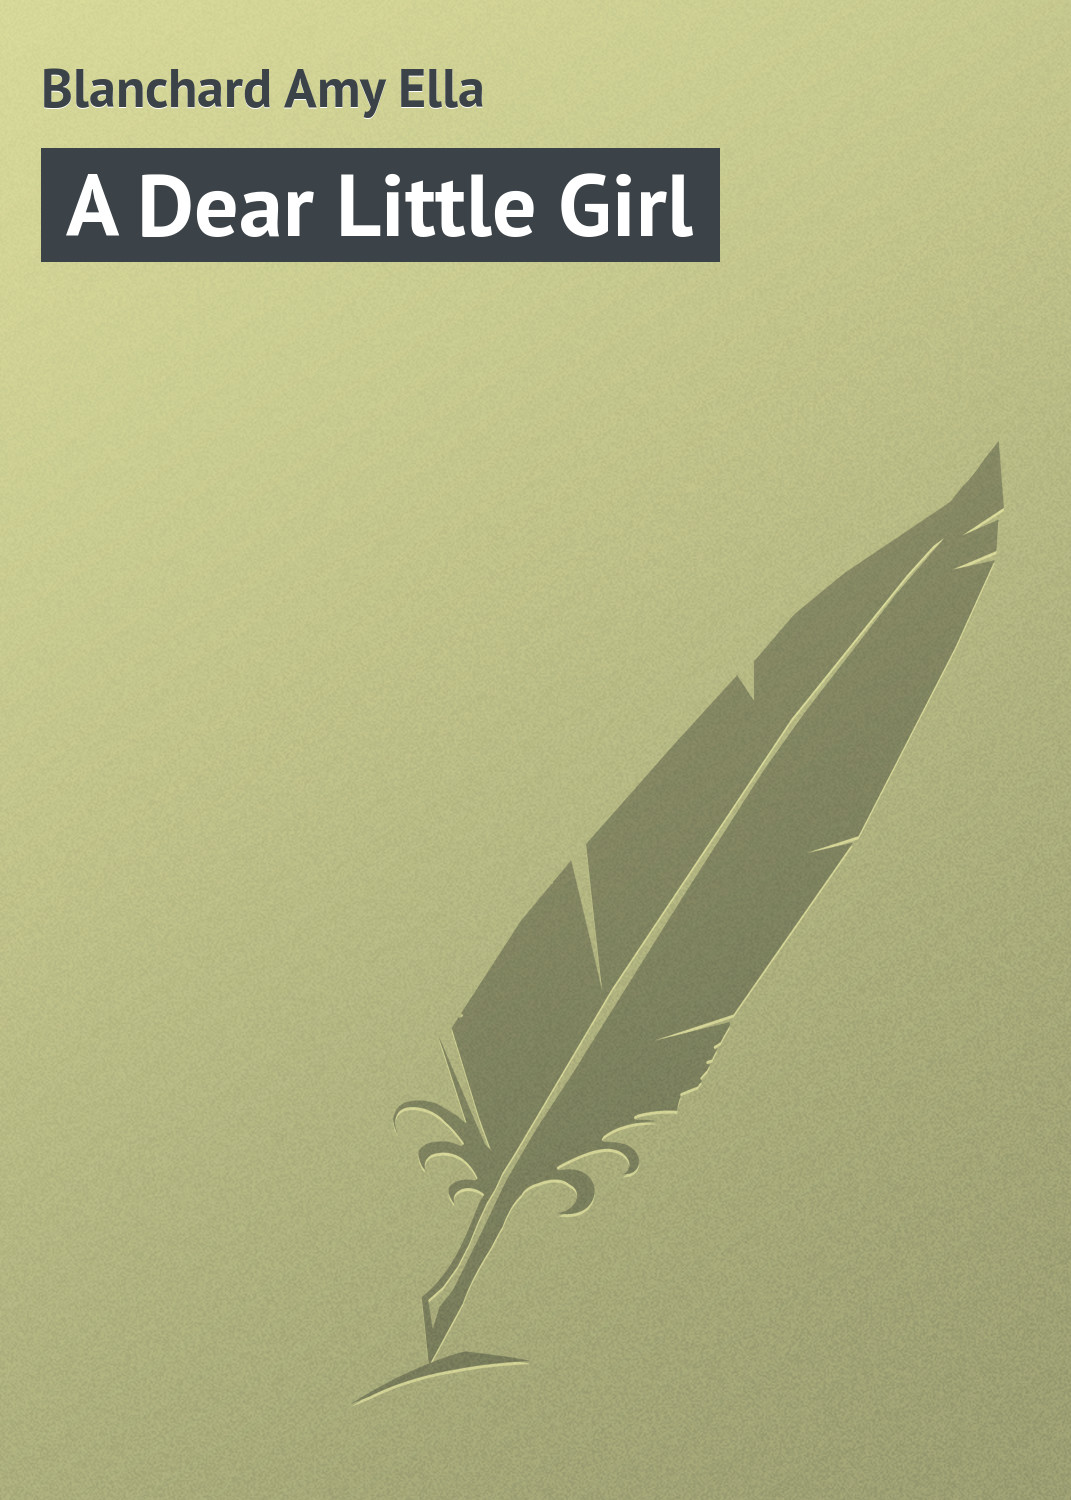 Книга A Dear Little Girl из серии , созданная Amy Blanchard, может относится к жанру Зарубежная классика, Зарубежные детские книги. Стоимость электронной книги A Dear Little Girl с идентификатором 23164195 составляет 5.99 руб.